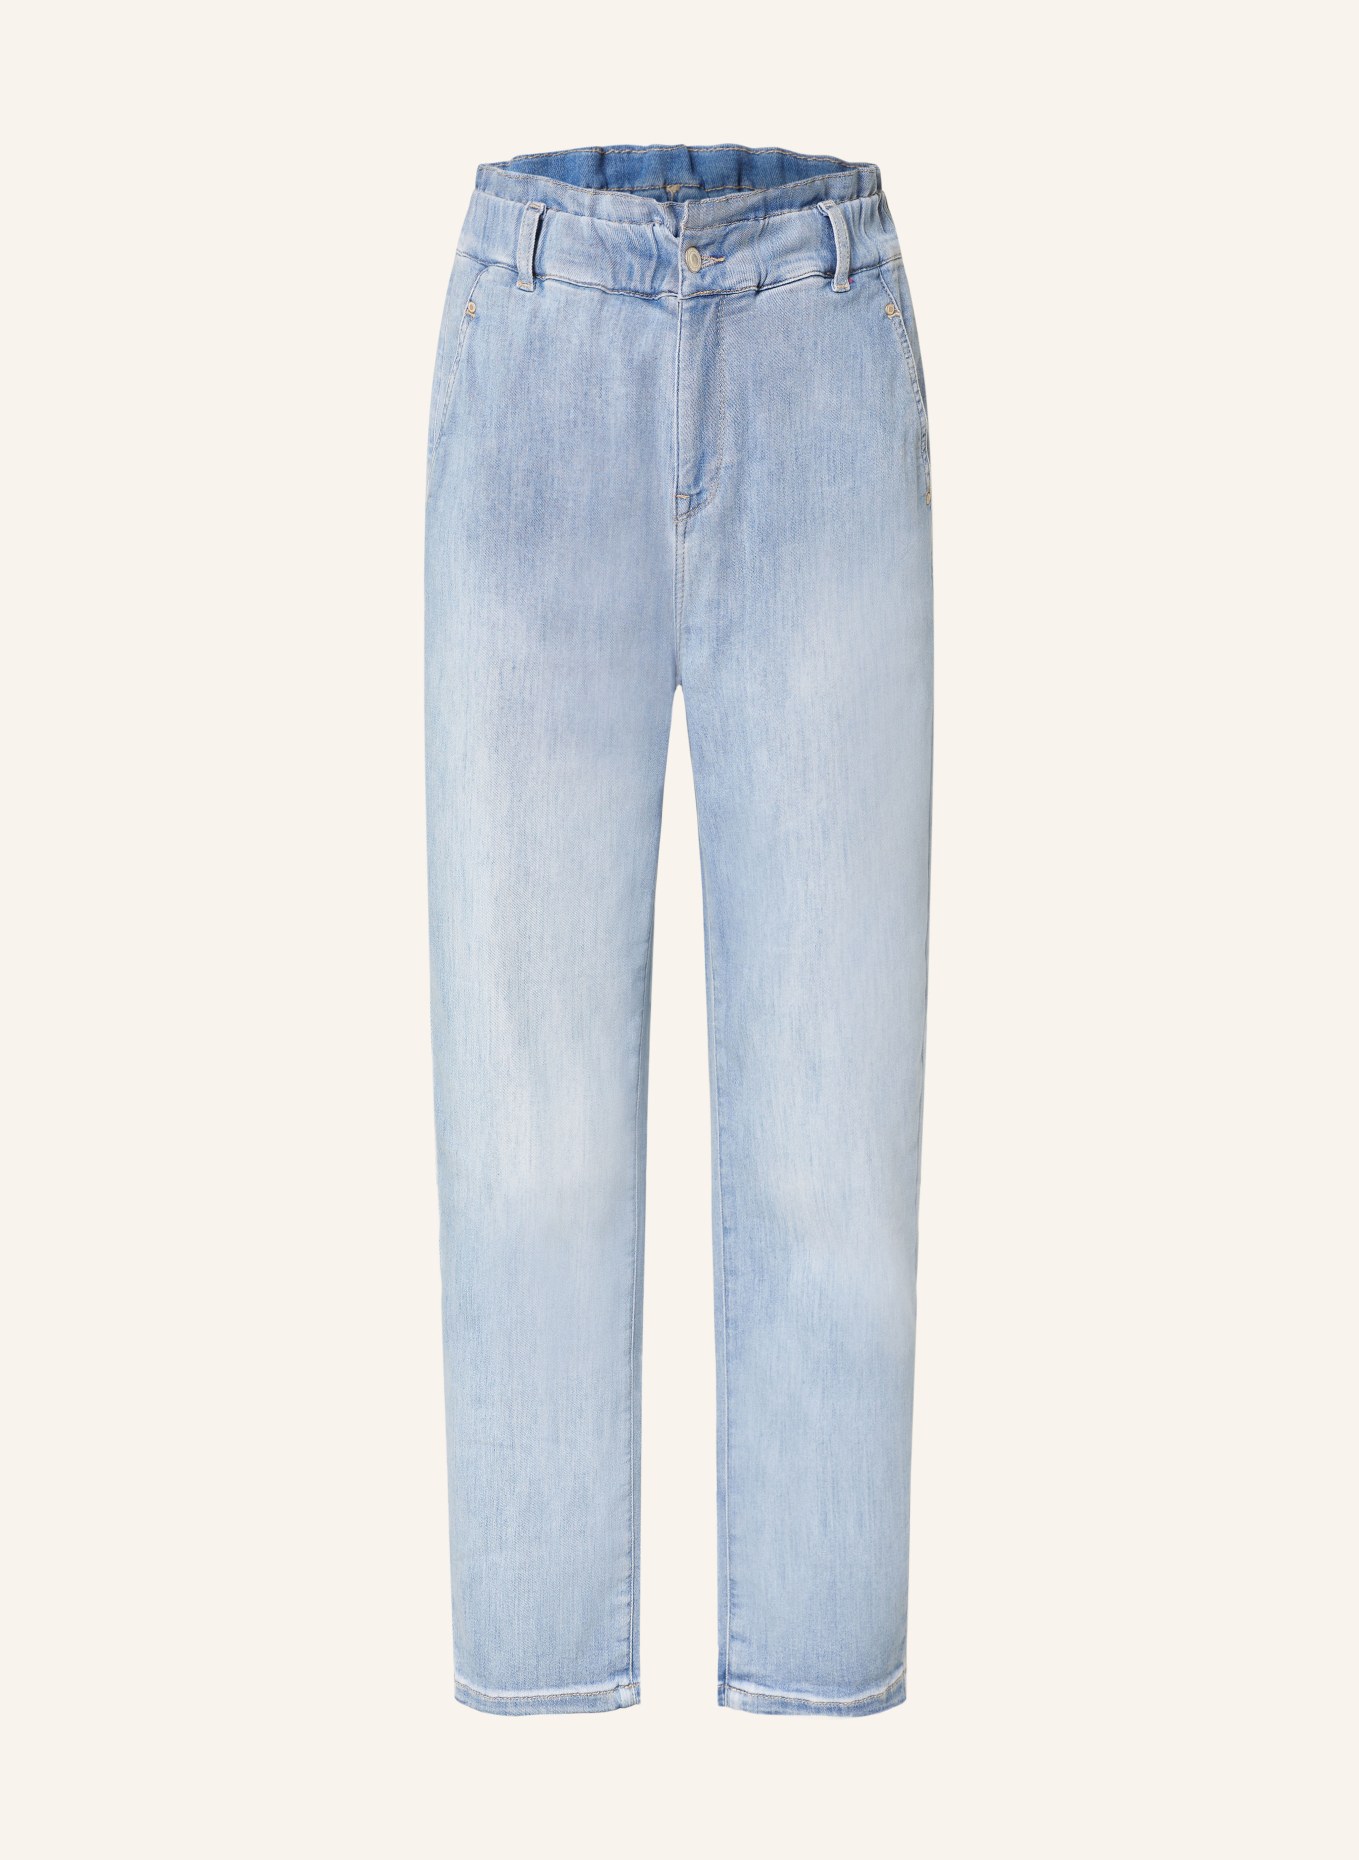 RAFFAELLO ROSSI 7/8 jeans RIANA, Color: 810 HELLBLAU (Image 1)